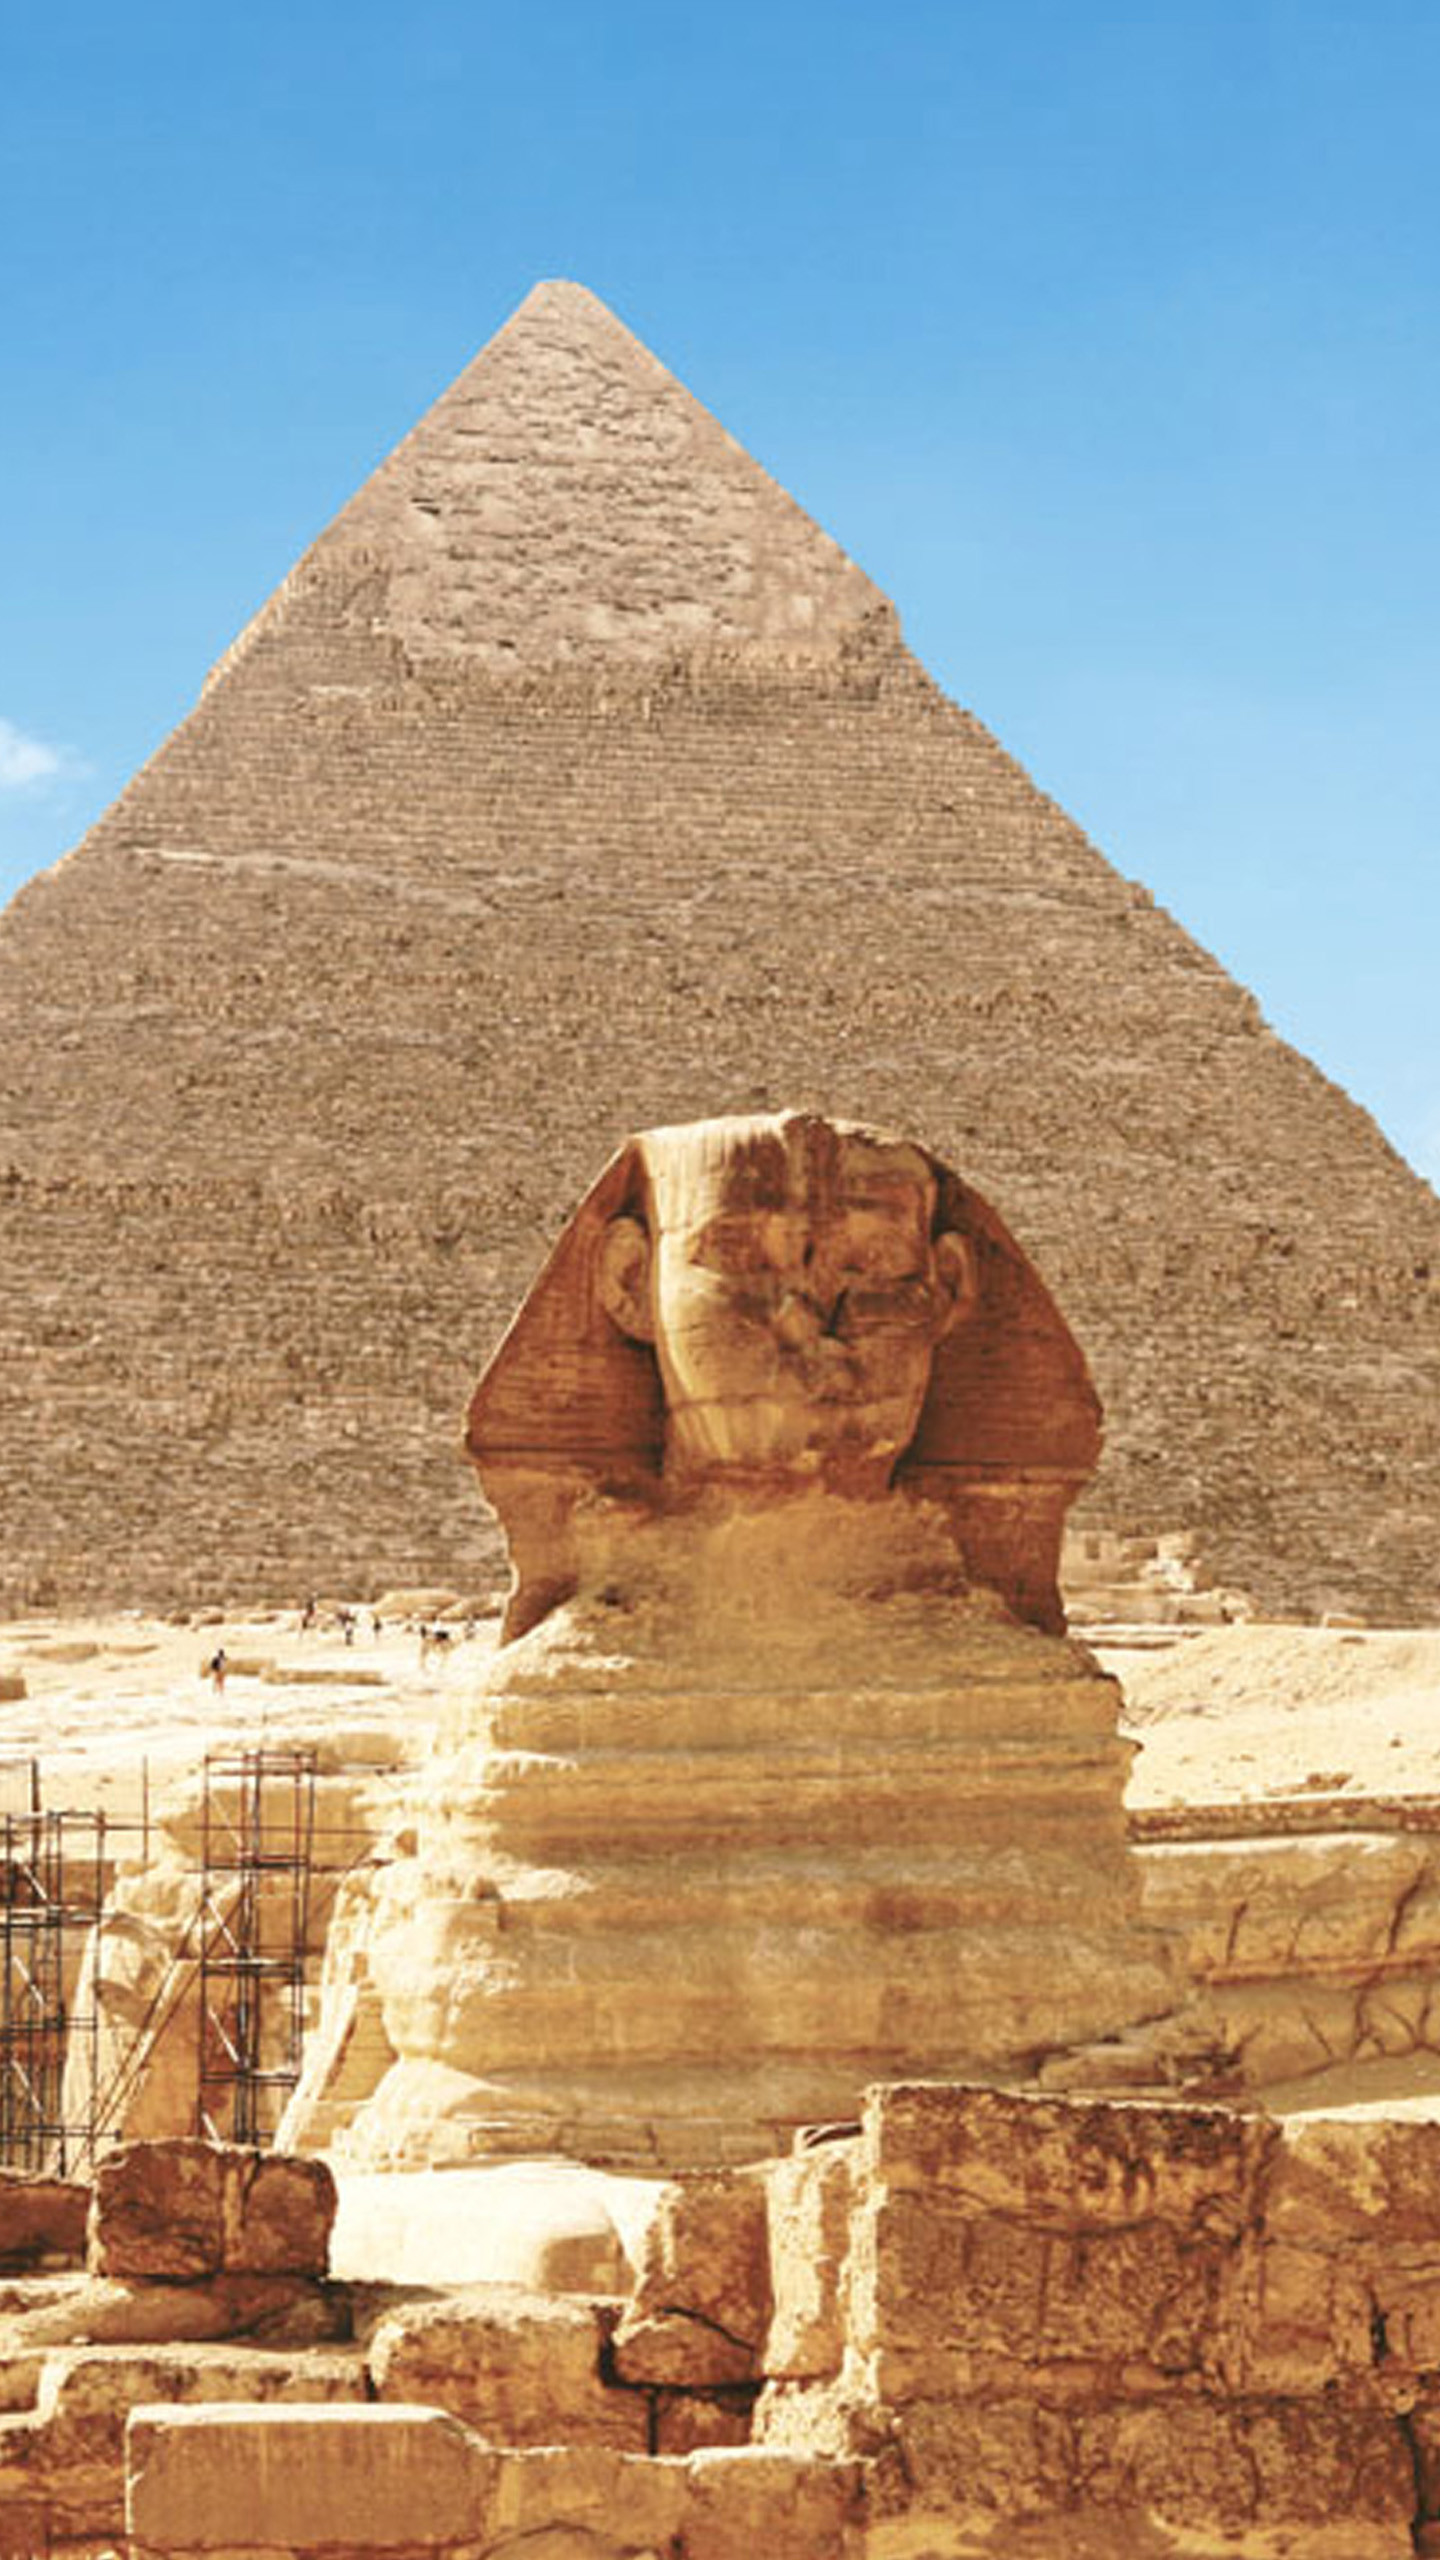 고대 이집트 벽지,피라미드,기념물,고대 역사,고고학 유적지,역사